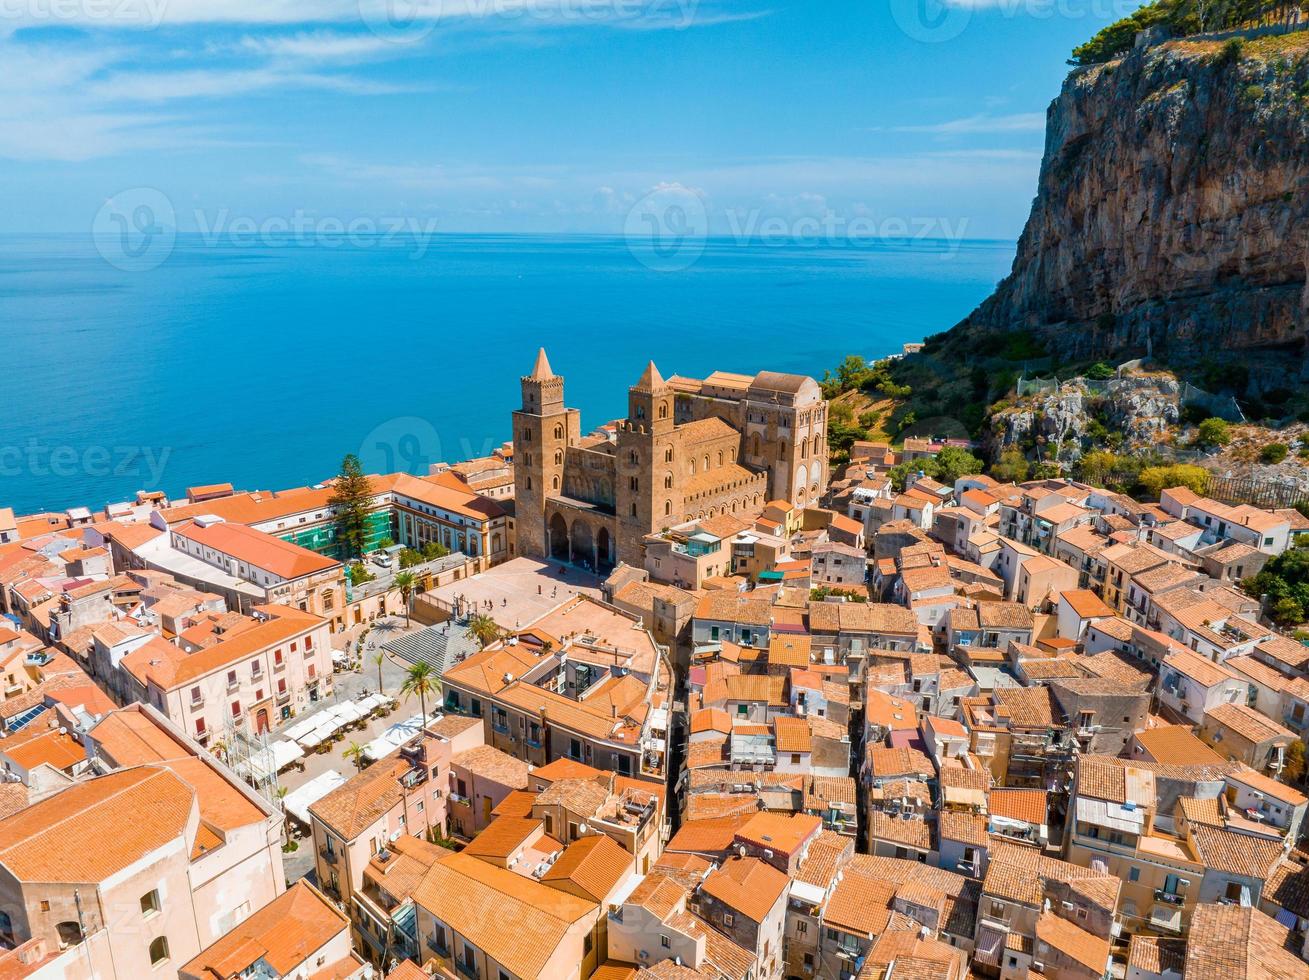 aereo panoramico Visualizza di il cefalù, medievale villaggio di sicilia isola foto